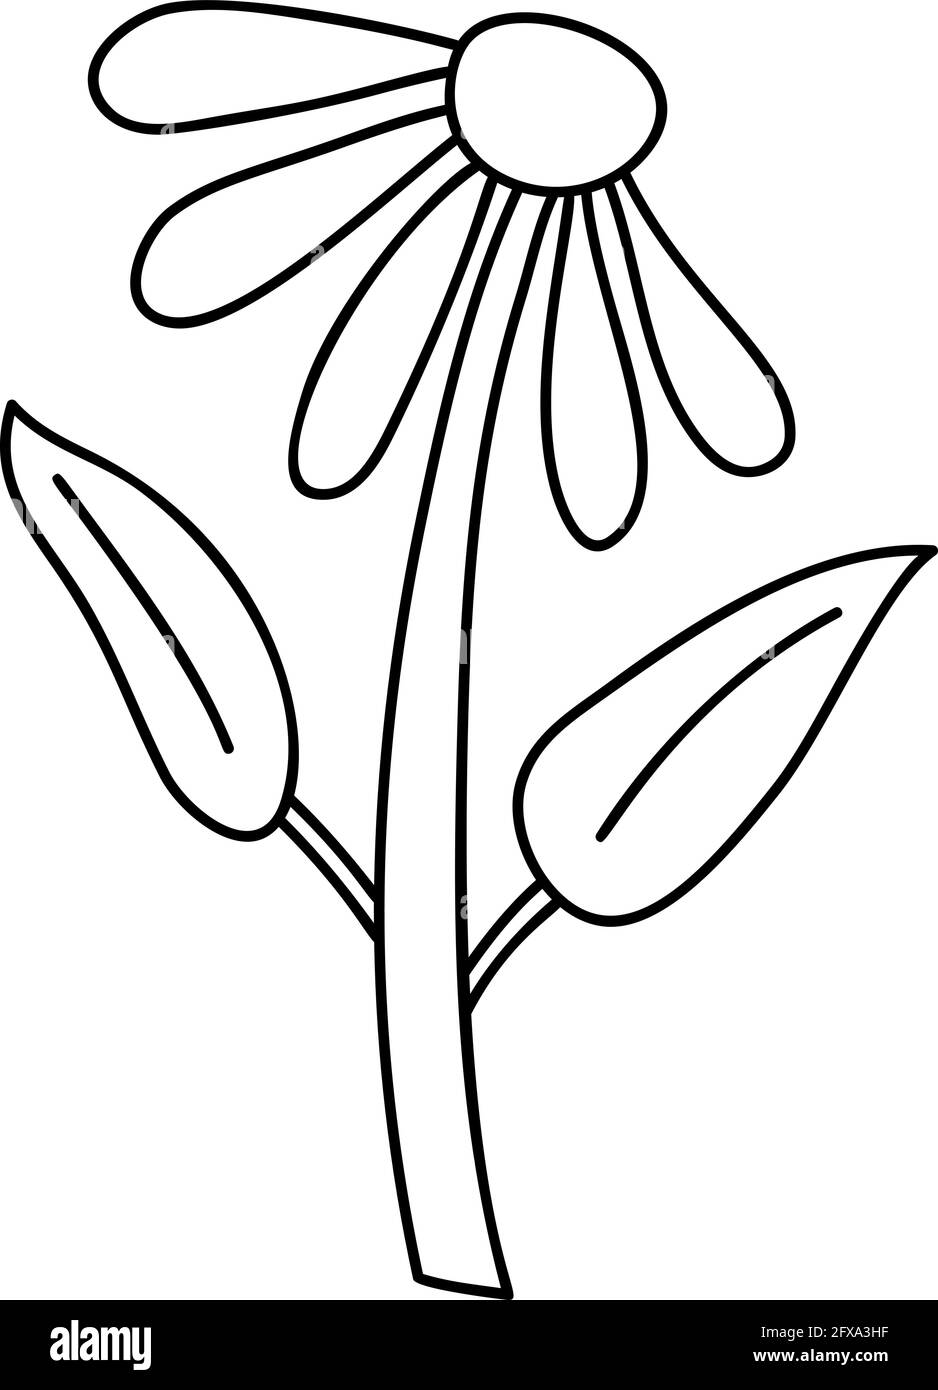 Fiore di primavera stilizzato vettoriale con monolina. Elemento grafico dell'illustrazione scandinava. Immagine floreale estate decorativa per il saluto Valentine Card o. Illustrazione Vettoriale